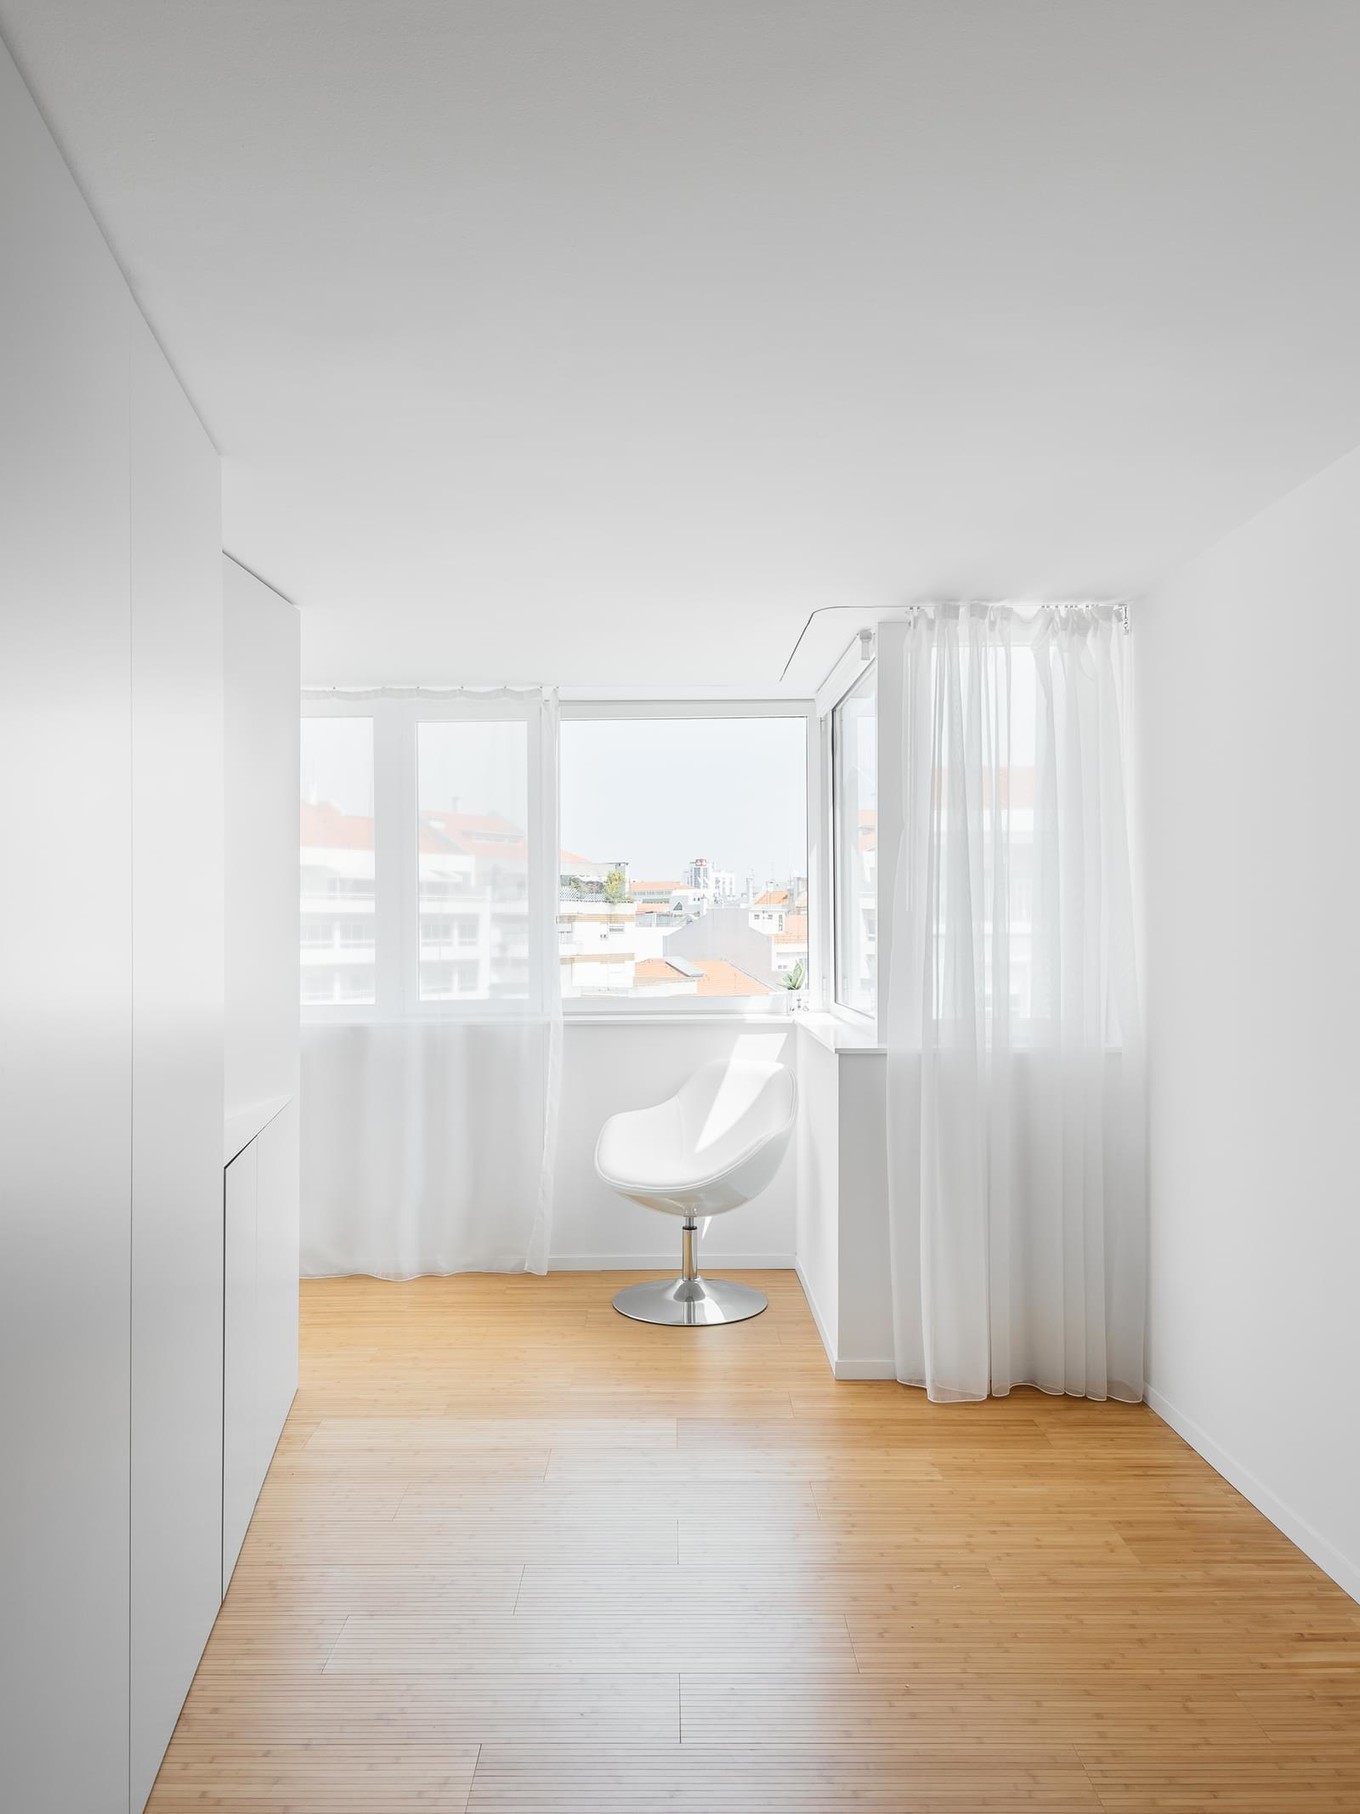 Интерьер квартиры с одним окном в Португалии